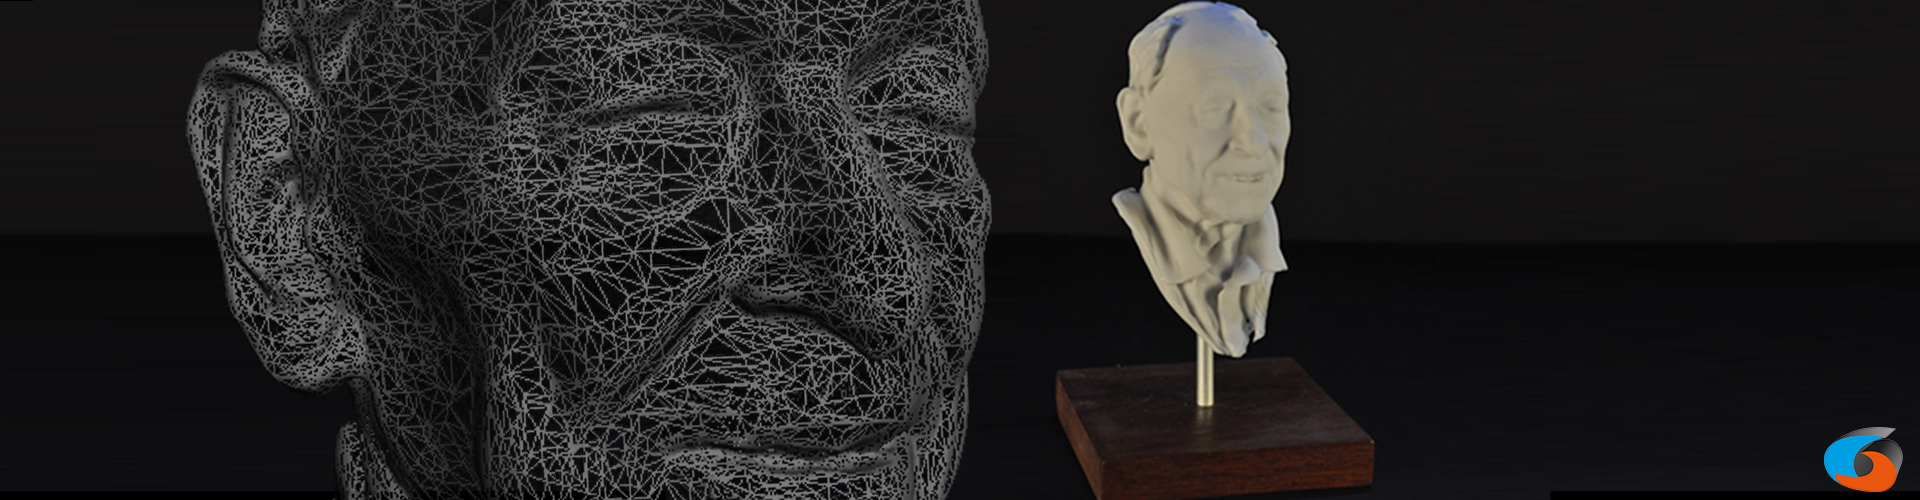 3D-printen ingescand gezicht